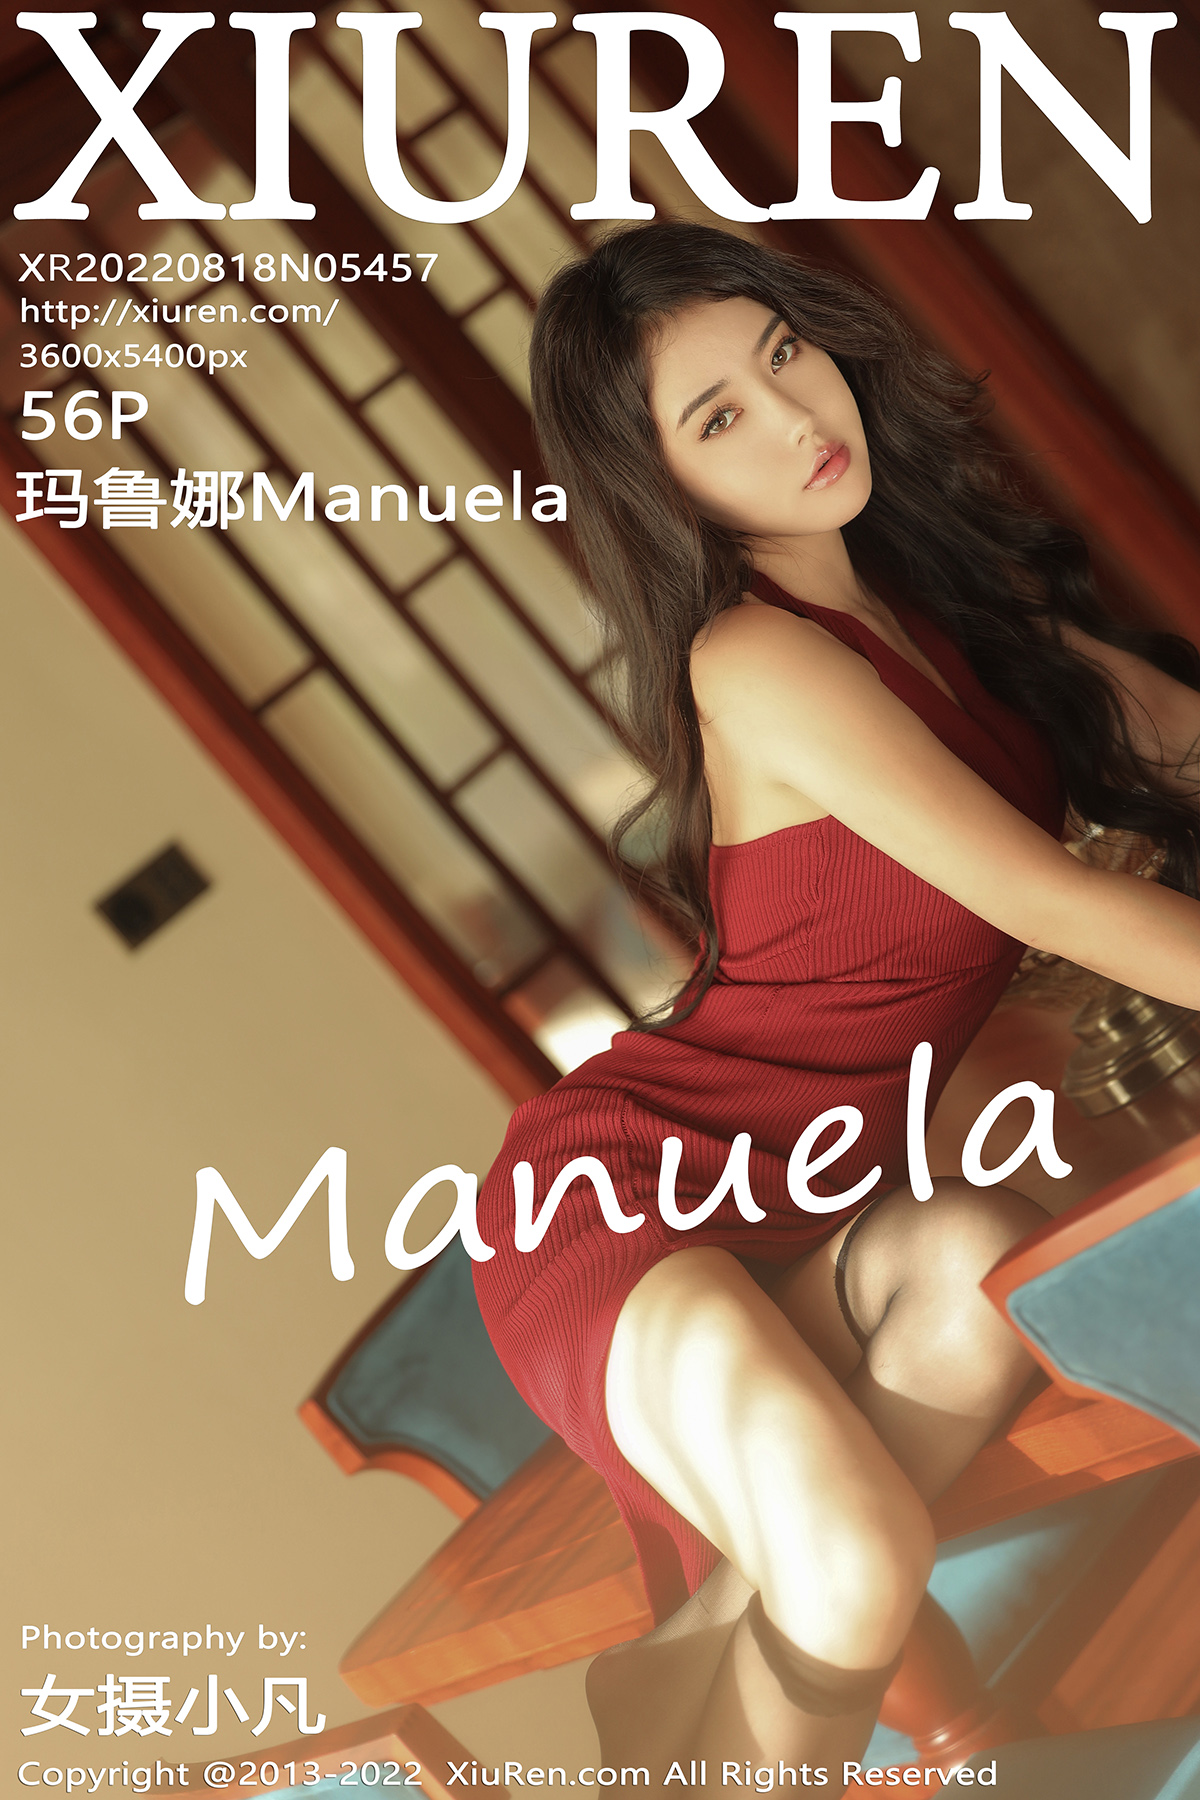 【XiuRen秀人網】2022.08.18 Vol.5457 Manuela瑪魯娜 完整版無水印寫真【56P】 - 貼圖 - 清涼寫真 -